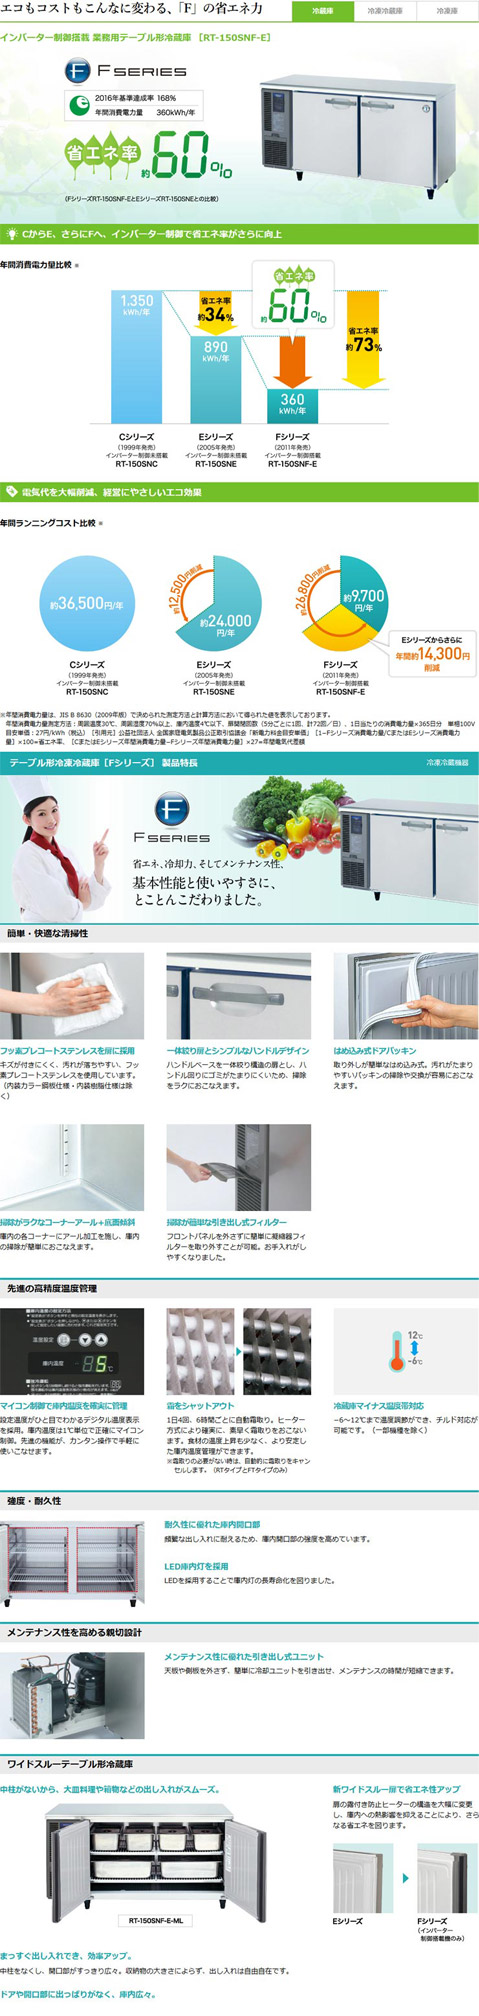 ホシザキ・星崎 横型インバーター冷蔵庫 型式：RT-180SNG-1-RML 送料無料 （メーカーより直送）メーカー保証付 受注生産品  r0405214 空調店舗厨房センター 通販 